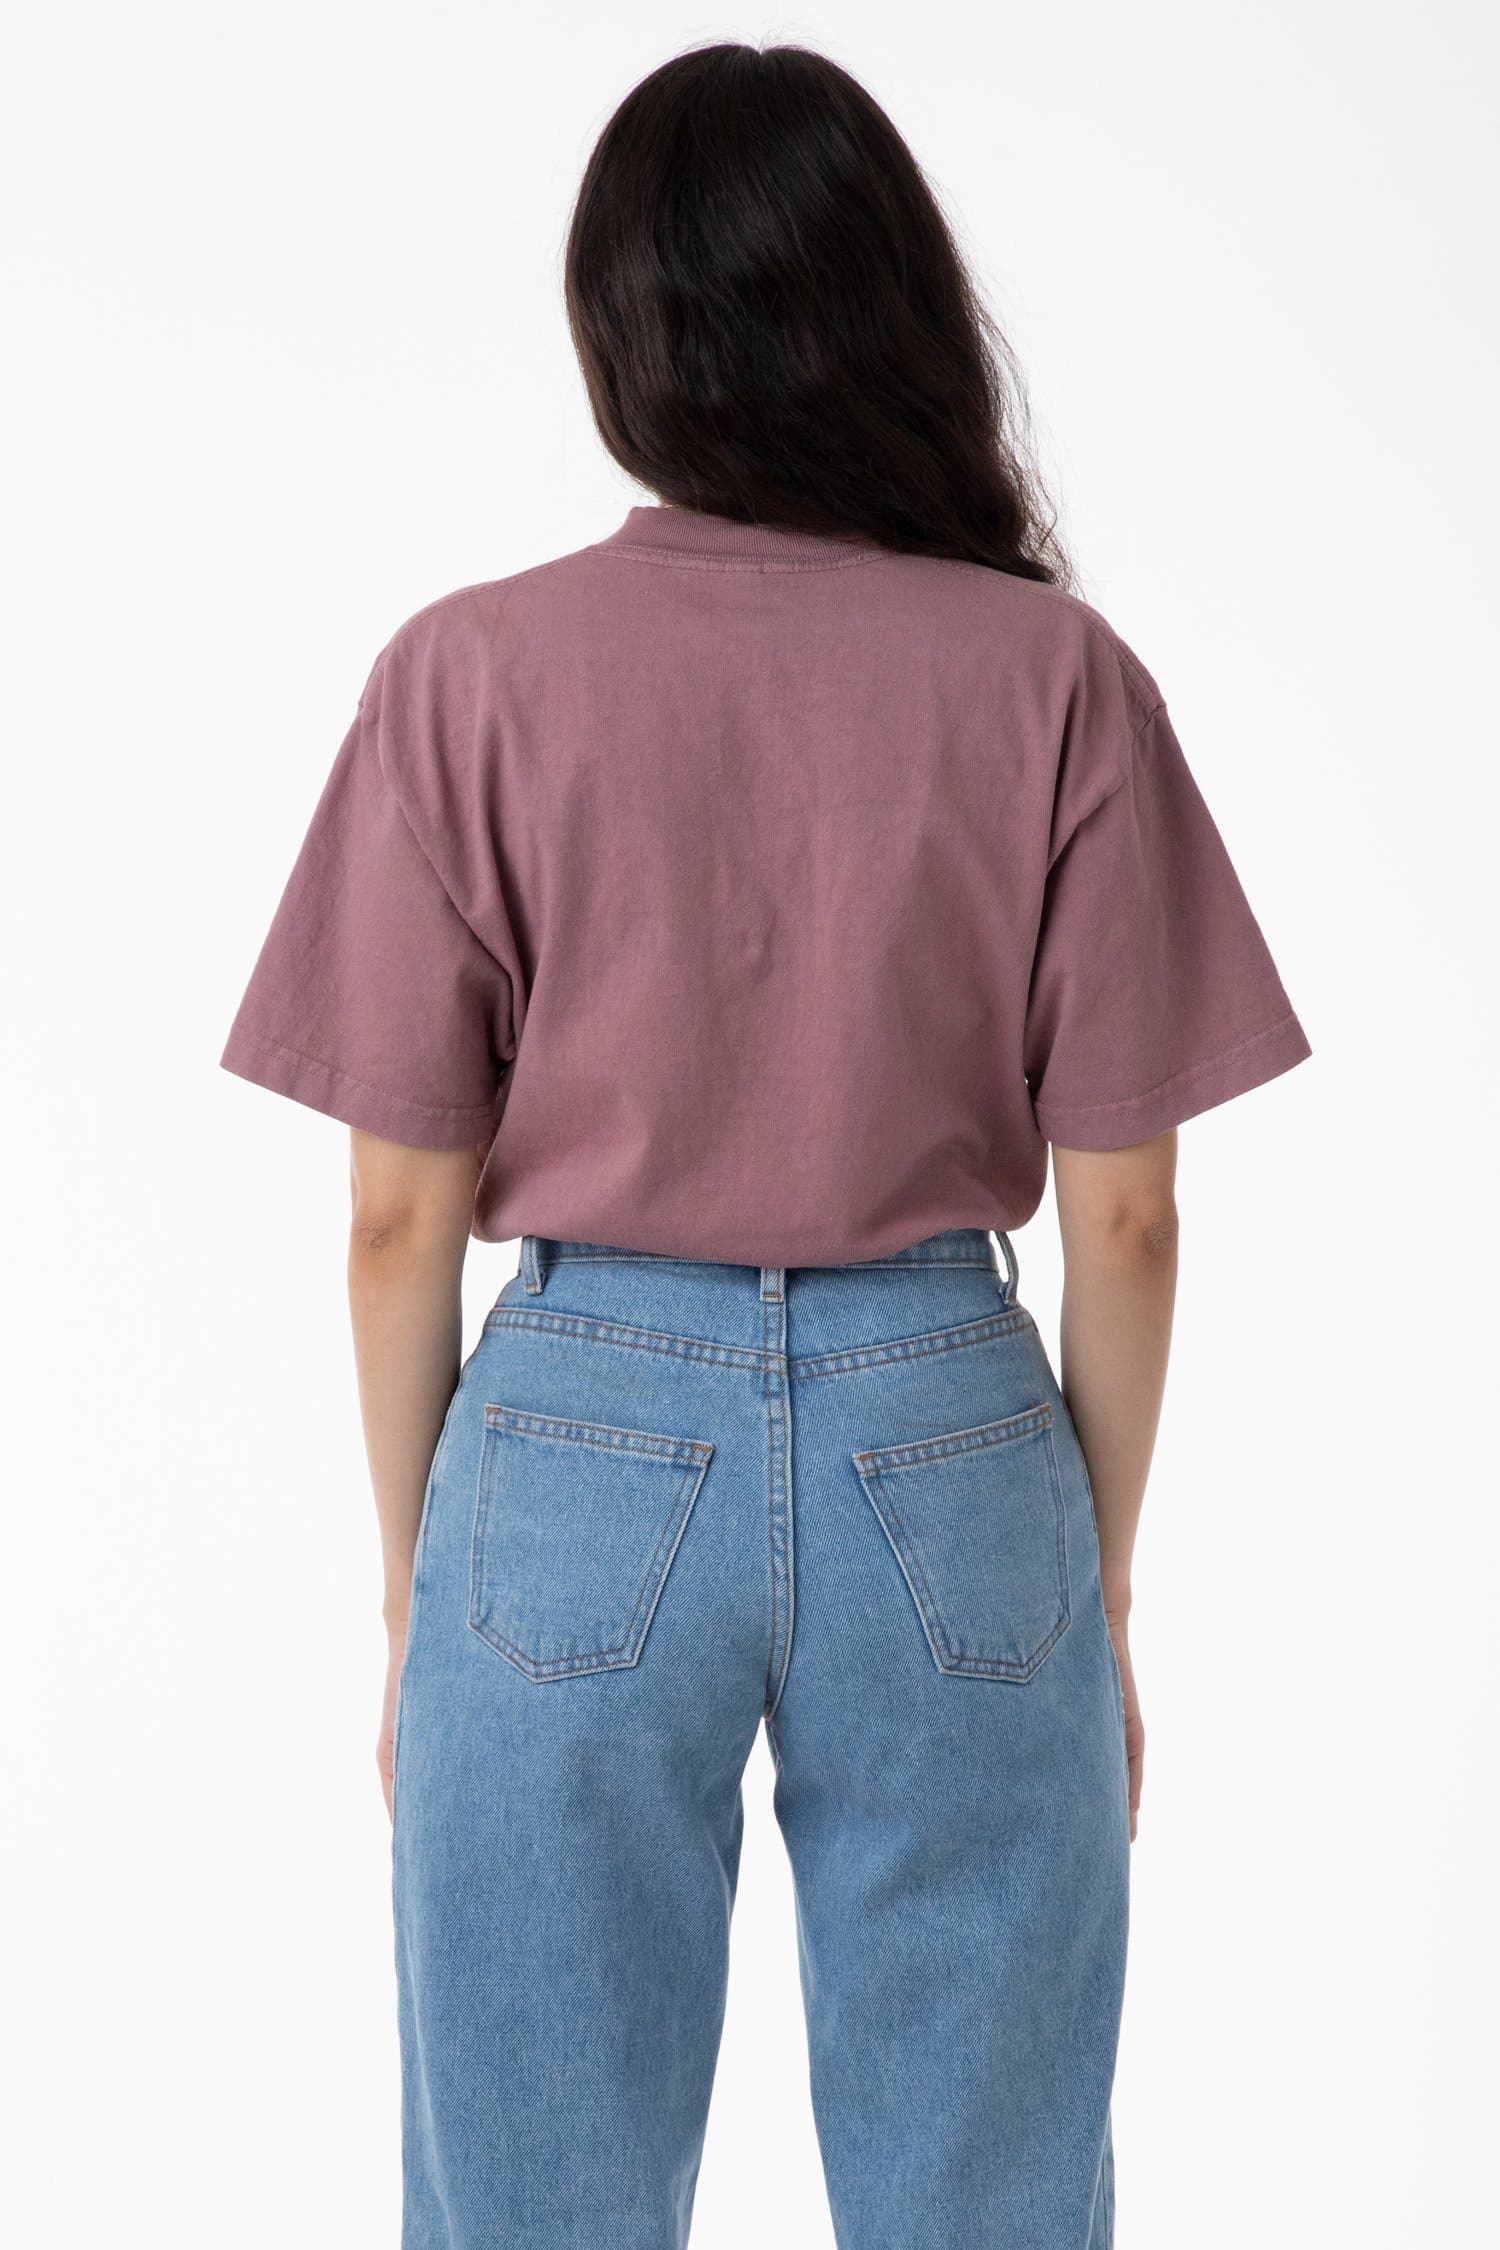 B119CFS - Short Sleeve T-shirt Bodysuit